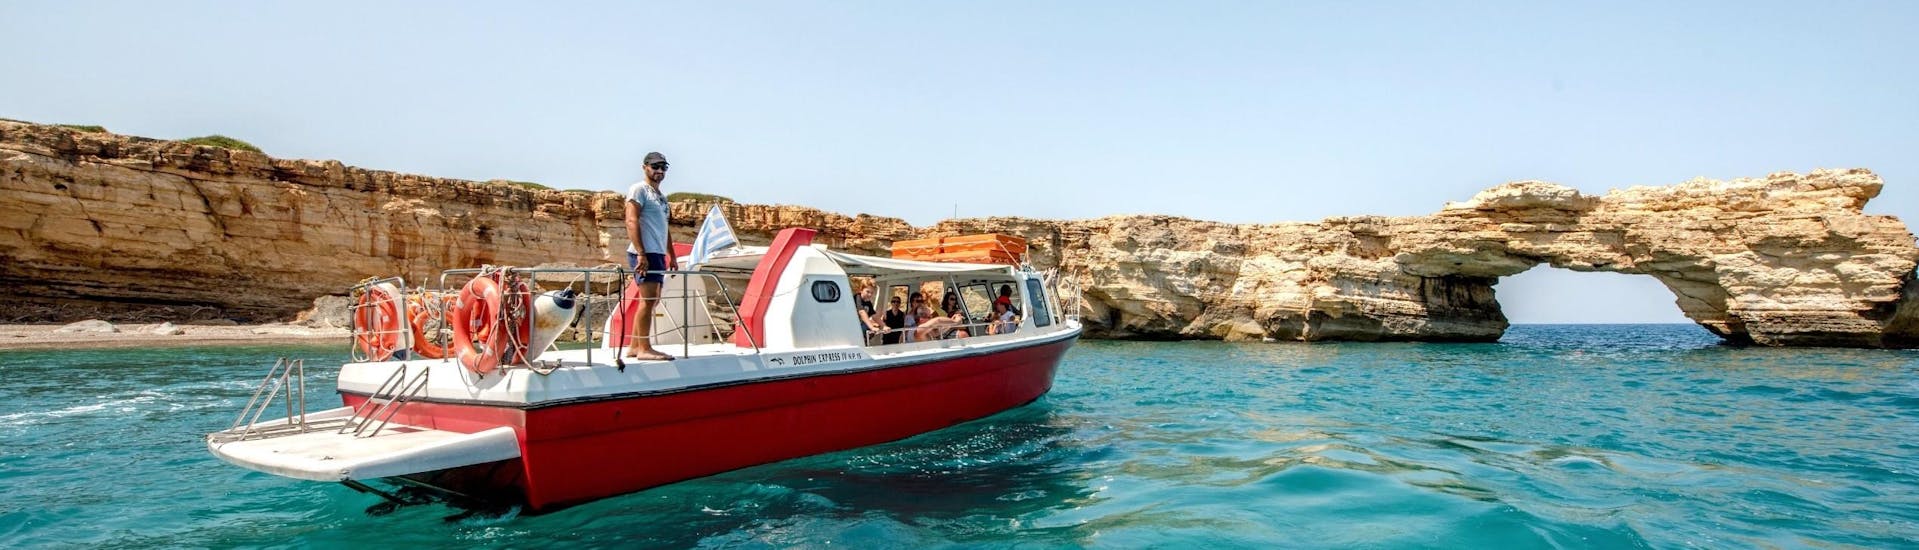 Le bateau de Dolphin Cruises Crete en mer lors d'une balade en bateau autour de Rethymno.